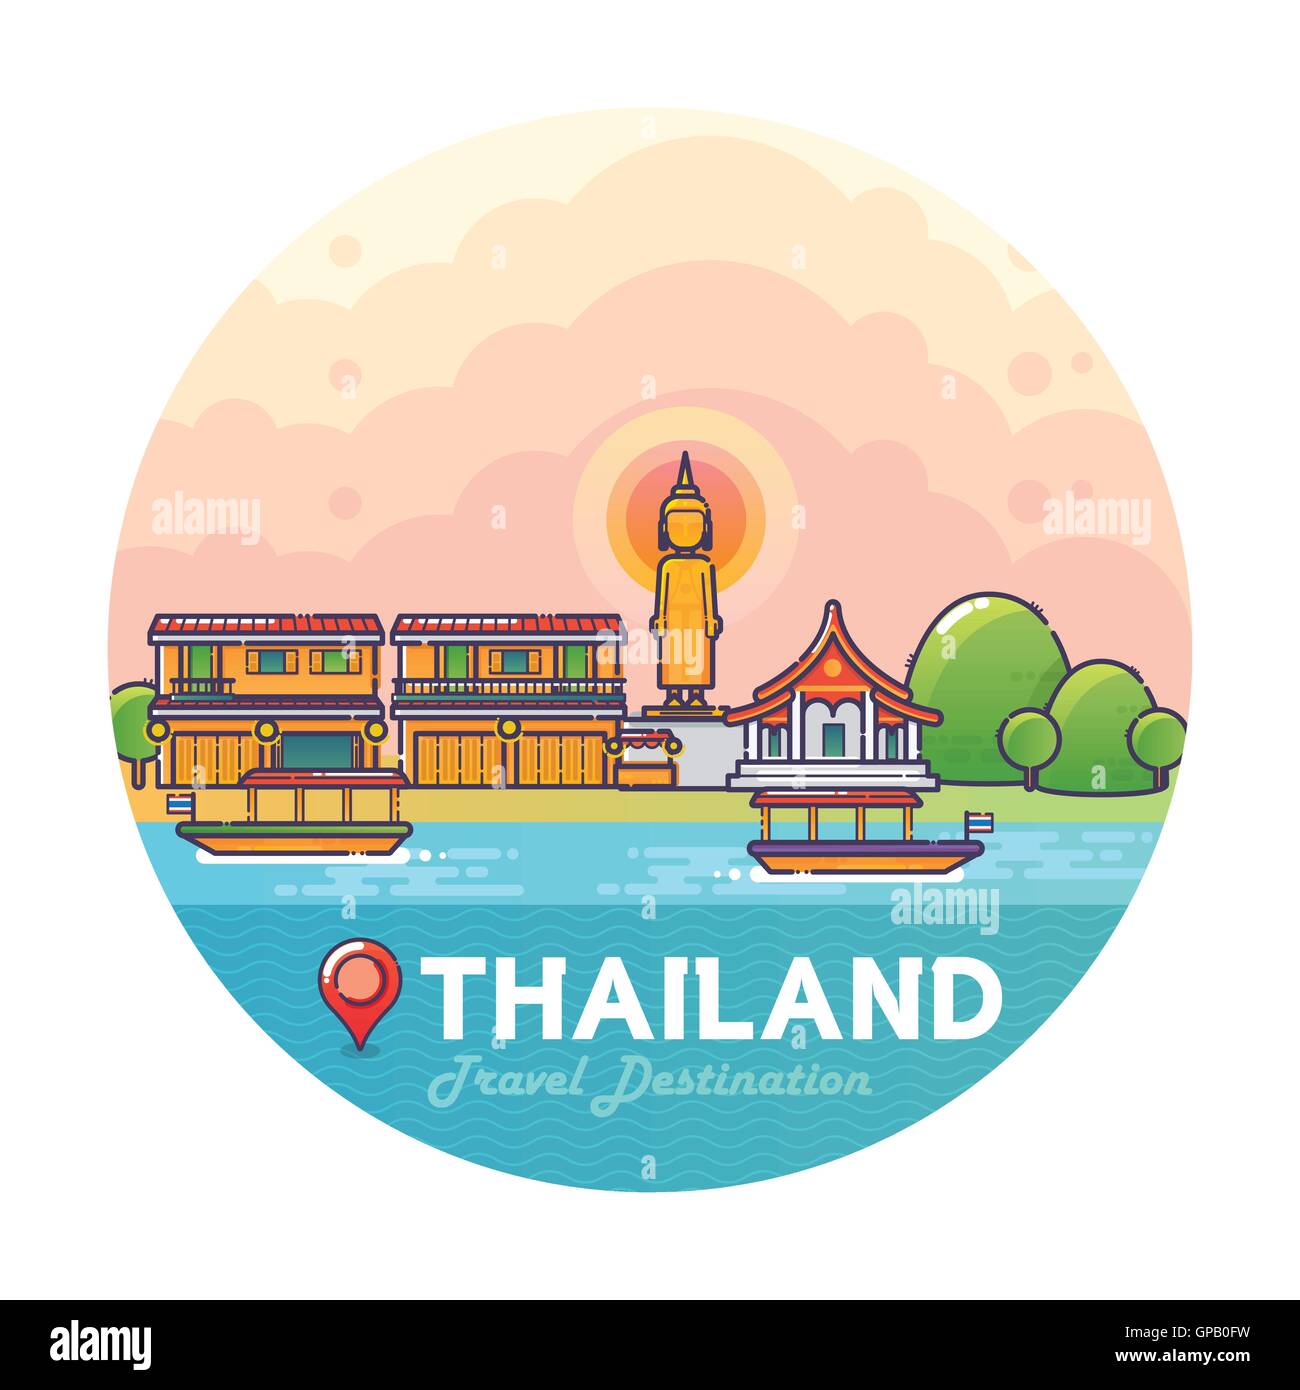 Vektor-Illustration von Thailand Travel Destination bunte detaillierte Skyline für Icon, Banner, Poster, Postkarte. Linearen Stil Stock Vektor